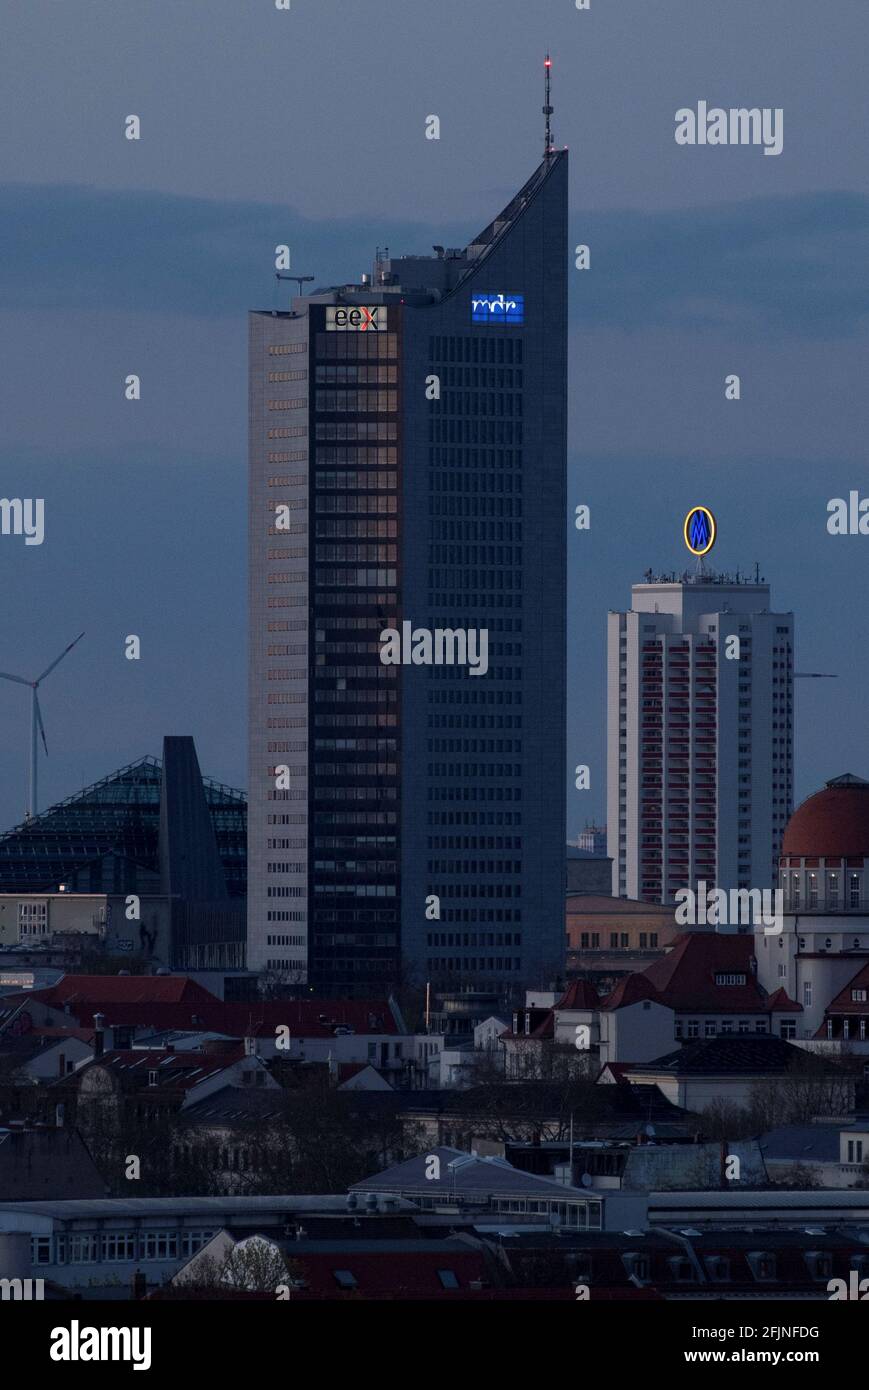 La sede centrale della Borsa europea dell'energia (EEx), la più grande  piattaforma di trading di energia online del mondo, si trova in un alto  edificio del centro città a Lipsia, Germania, il